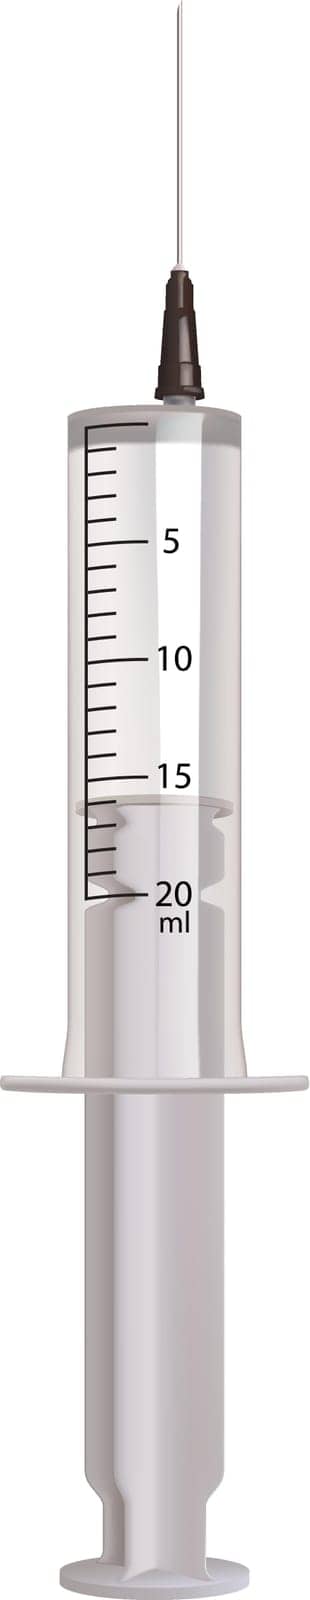 illustration of realistic transparent syringe isolated on white background